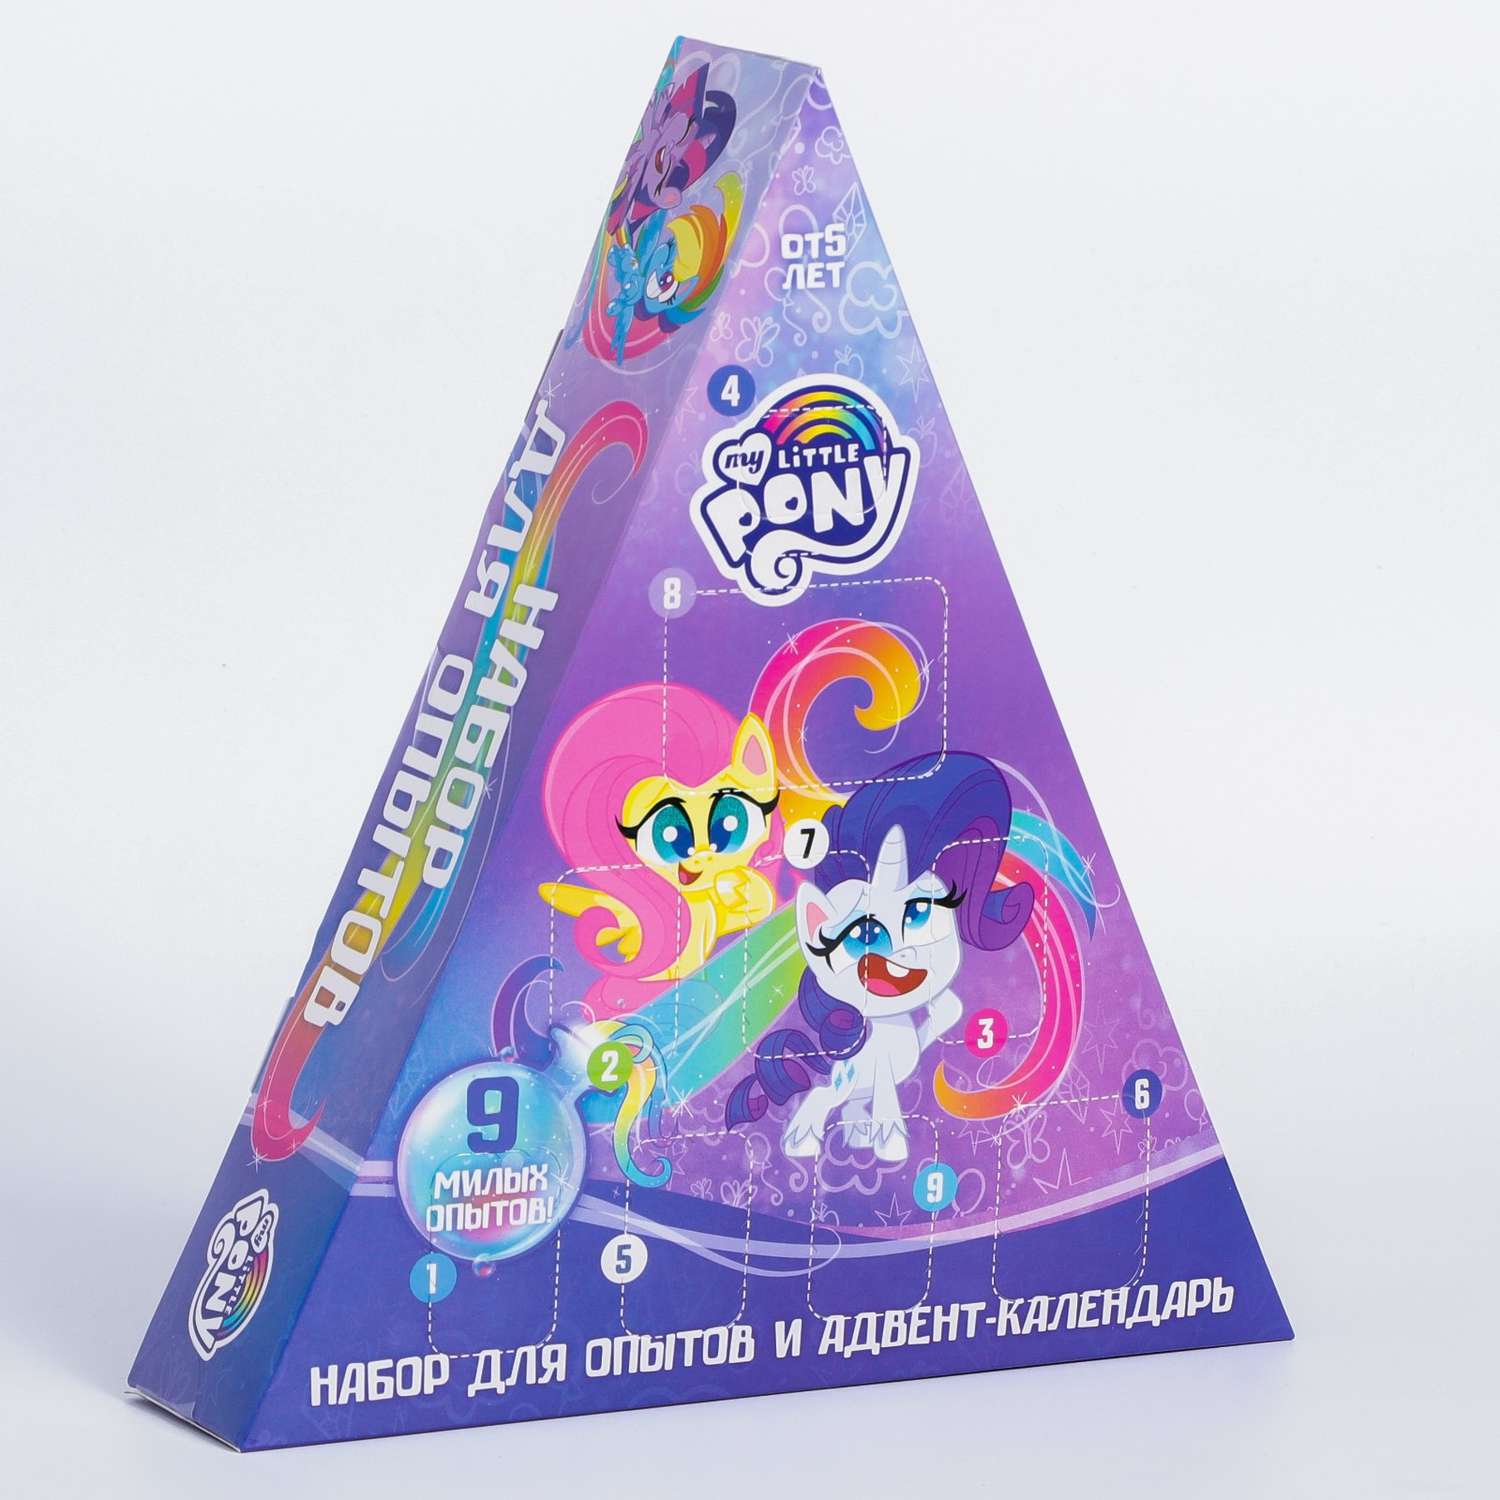 Набор для опытов Hasbro и адвент-календарь My little pony - фото 1